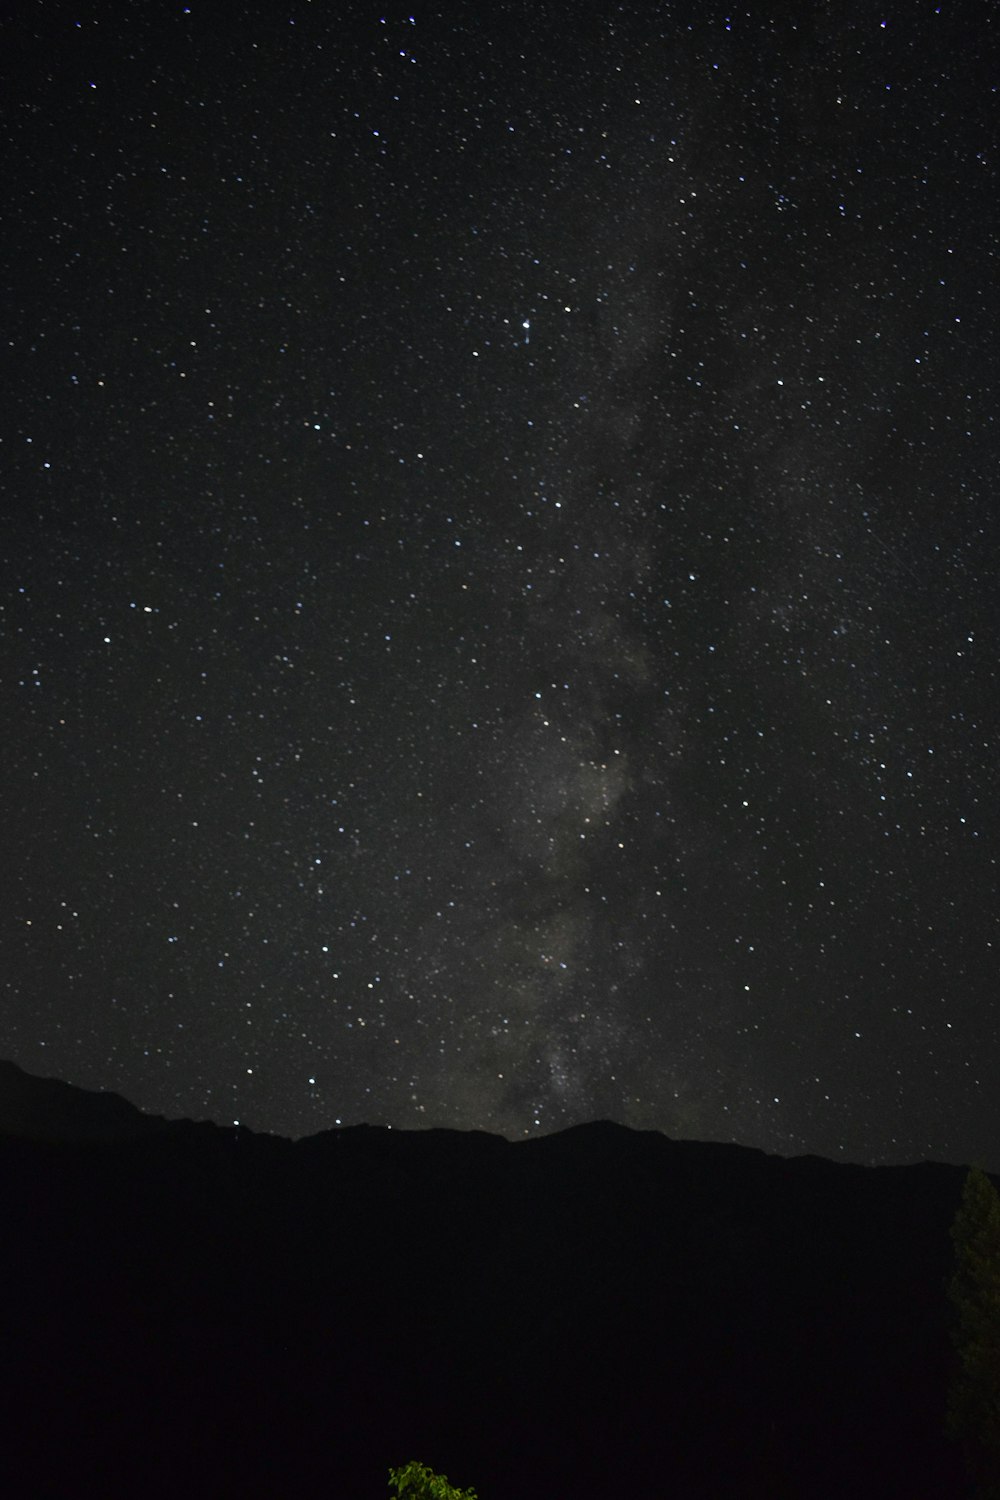 Der Nachthimmel mit Sternen und einem Baum im Vordergrund